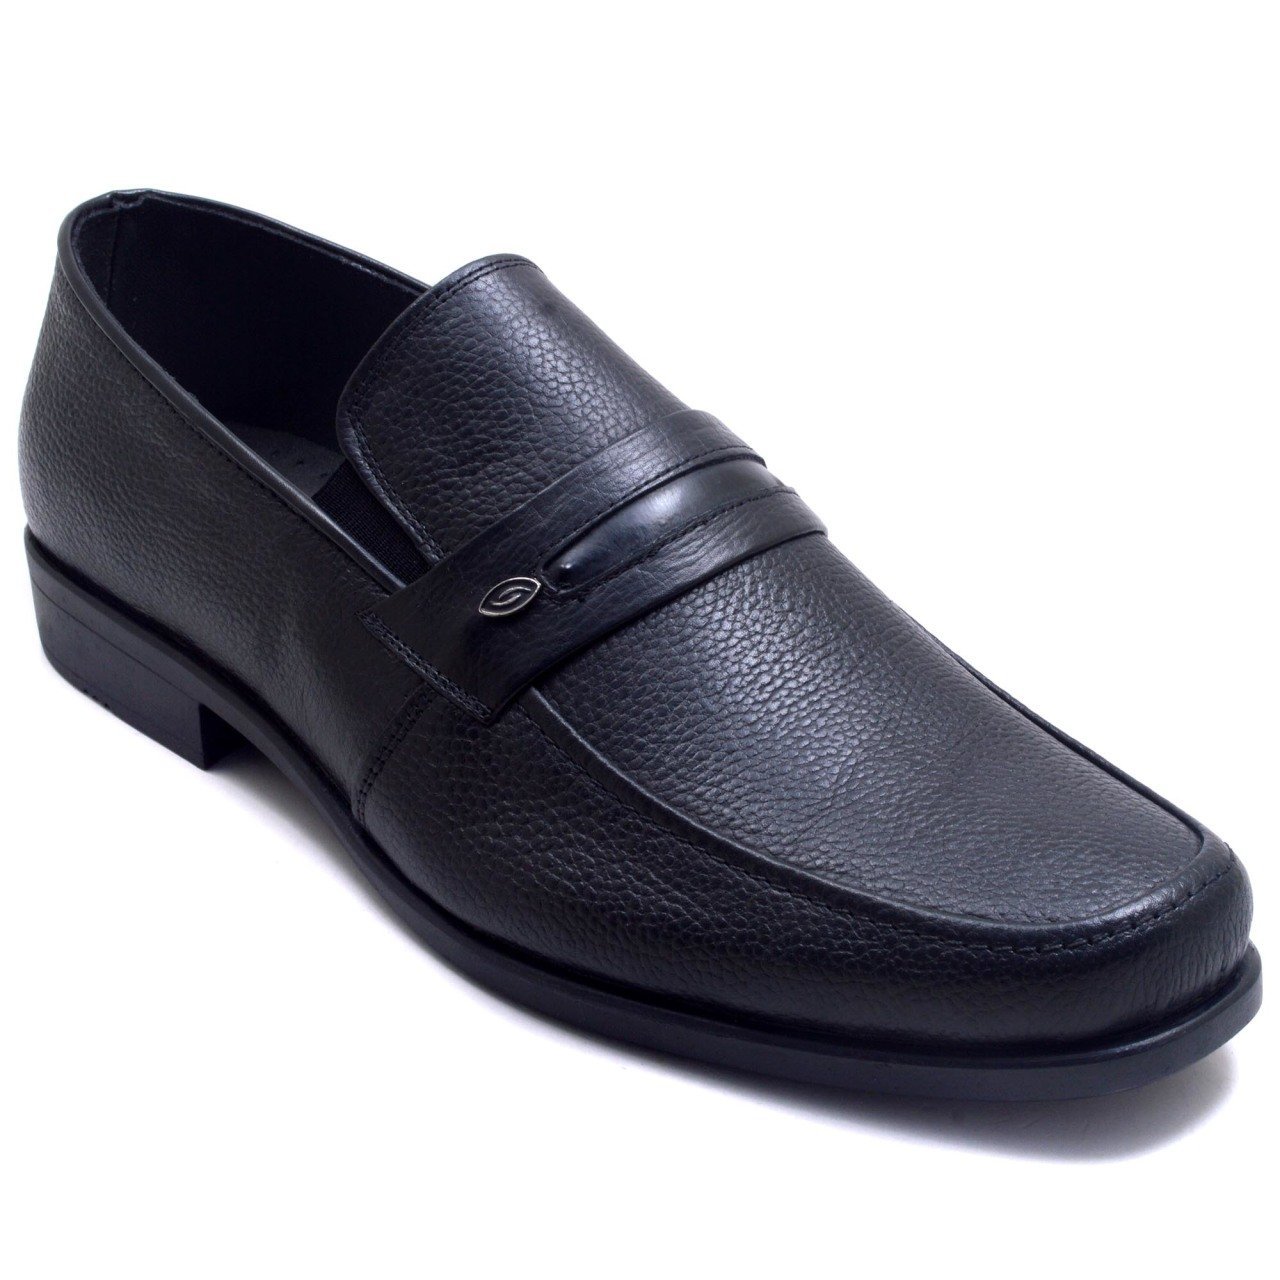 733-DR Bağcıksız Jurdan Erkek Deri Ayakkabı - Siyah